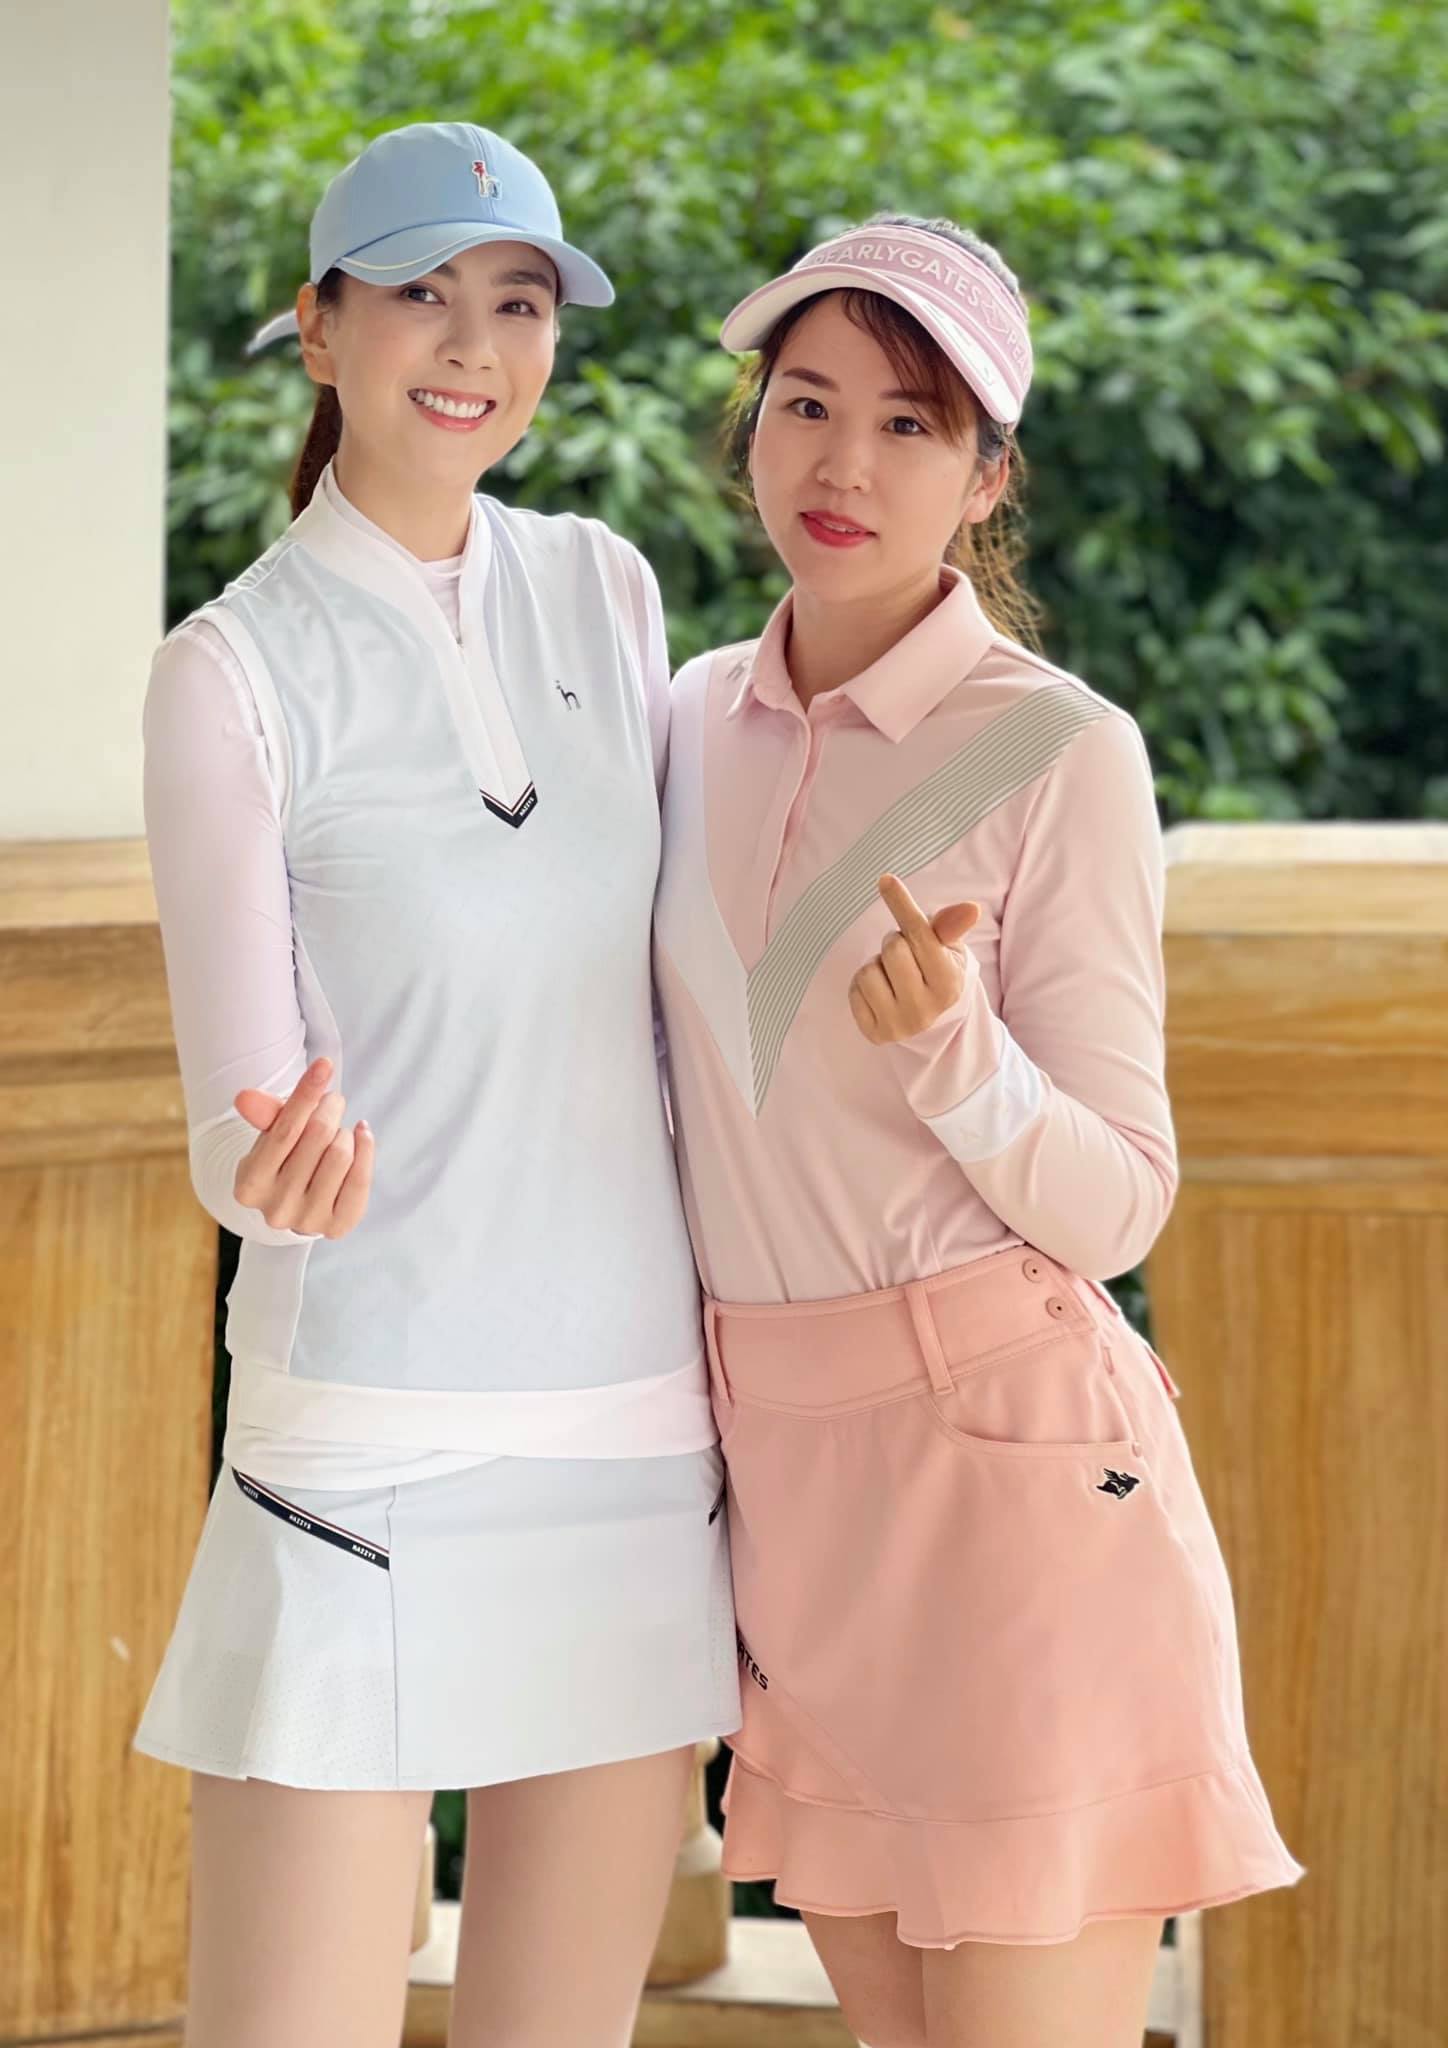 Chỉ đợi Hương Giang ”comeback”, quân đoàn Hoa hậu tung ngay loạt ảnh trên sân golf, tổ hợp visual choáng ngợp nức lòng người - Ảnh 5.